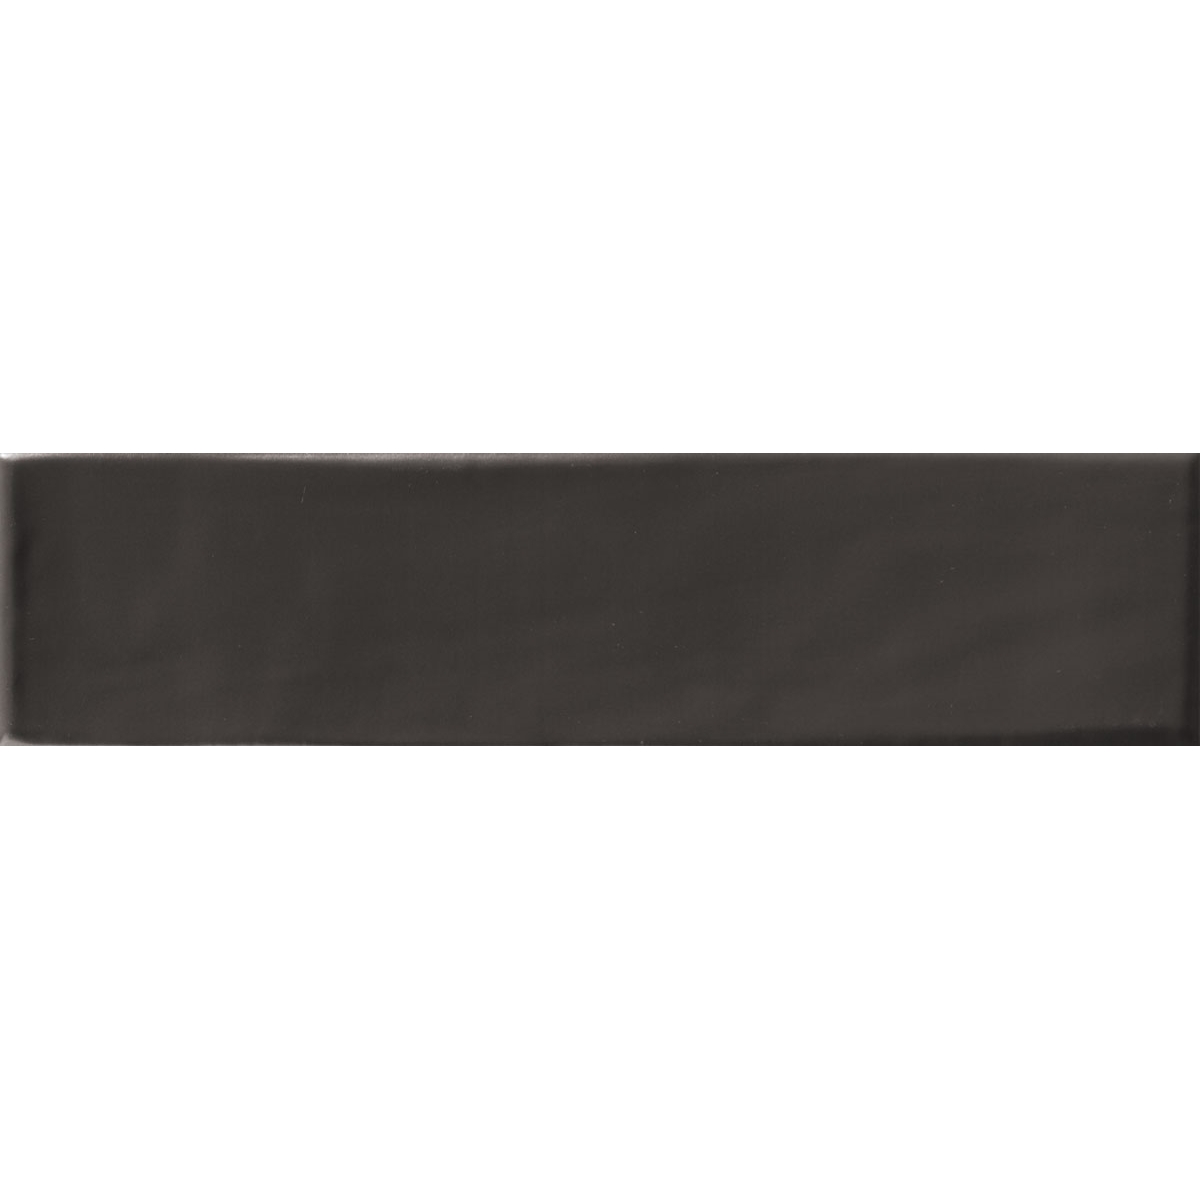 Revestimiento con pequeño formato Mainzu - Settecento rustic negro mate 7.5x30 cm (caja 1 m2)